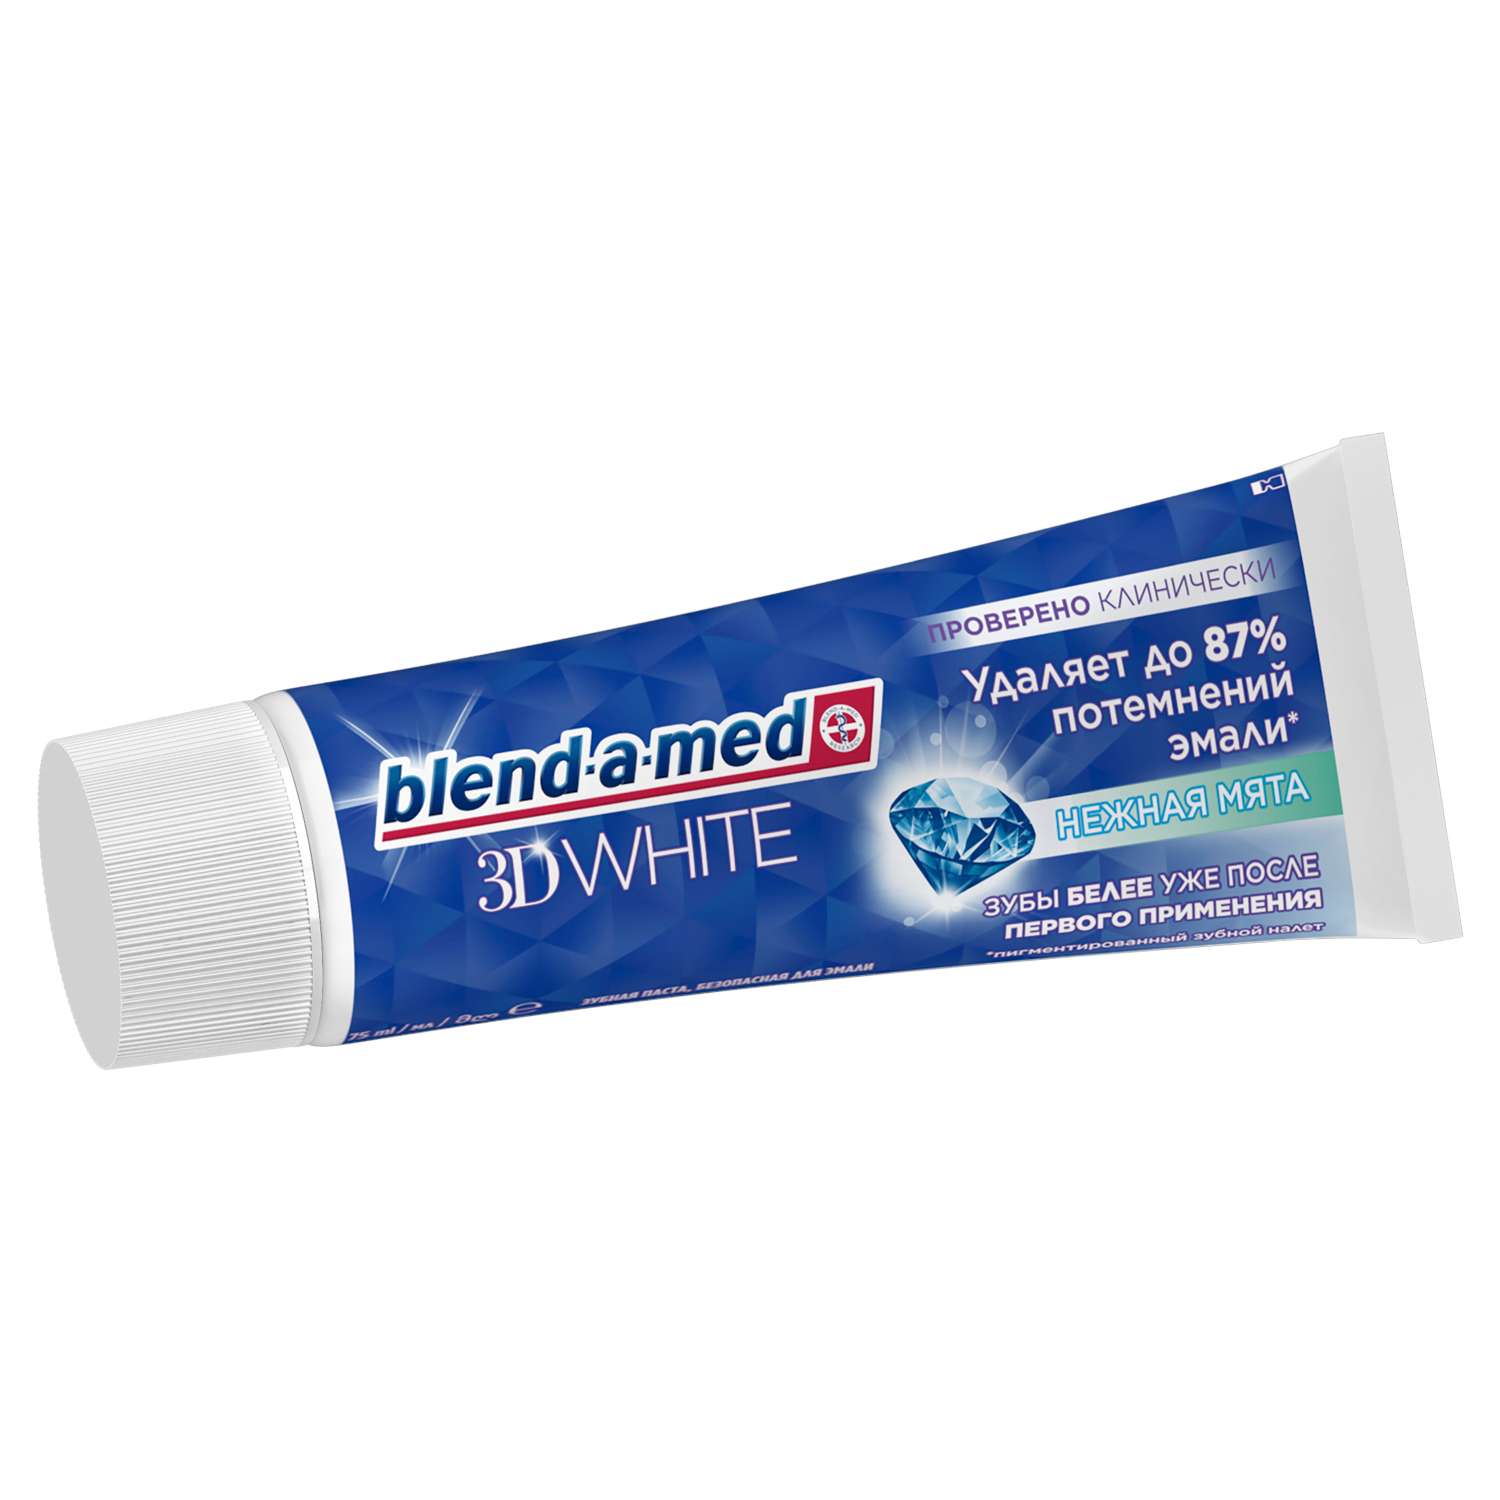 Зубная паста Blend-a-med 3D White Нежная мята 75мл - фото 2